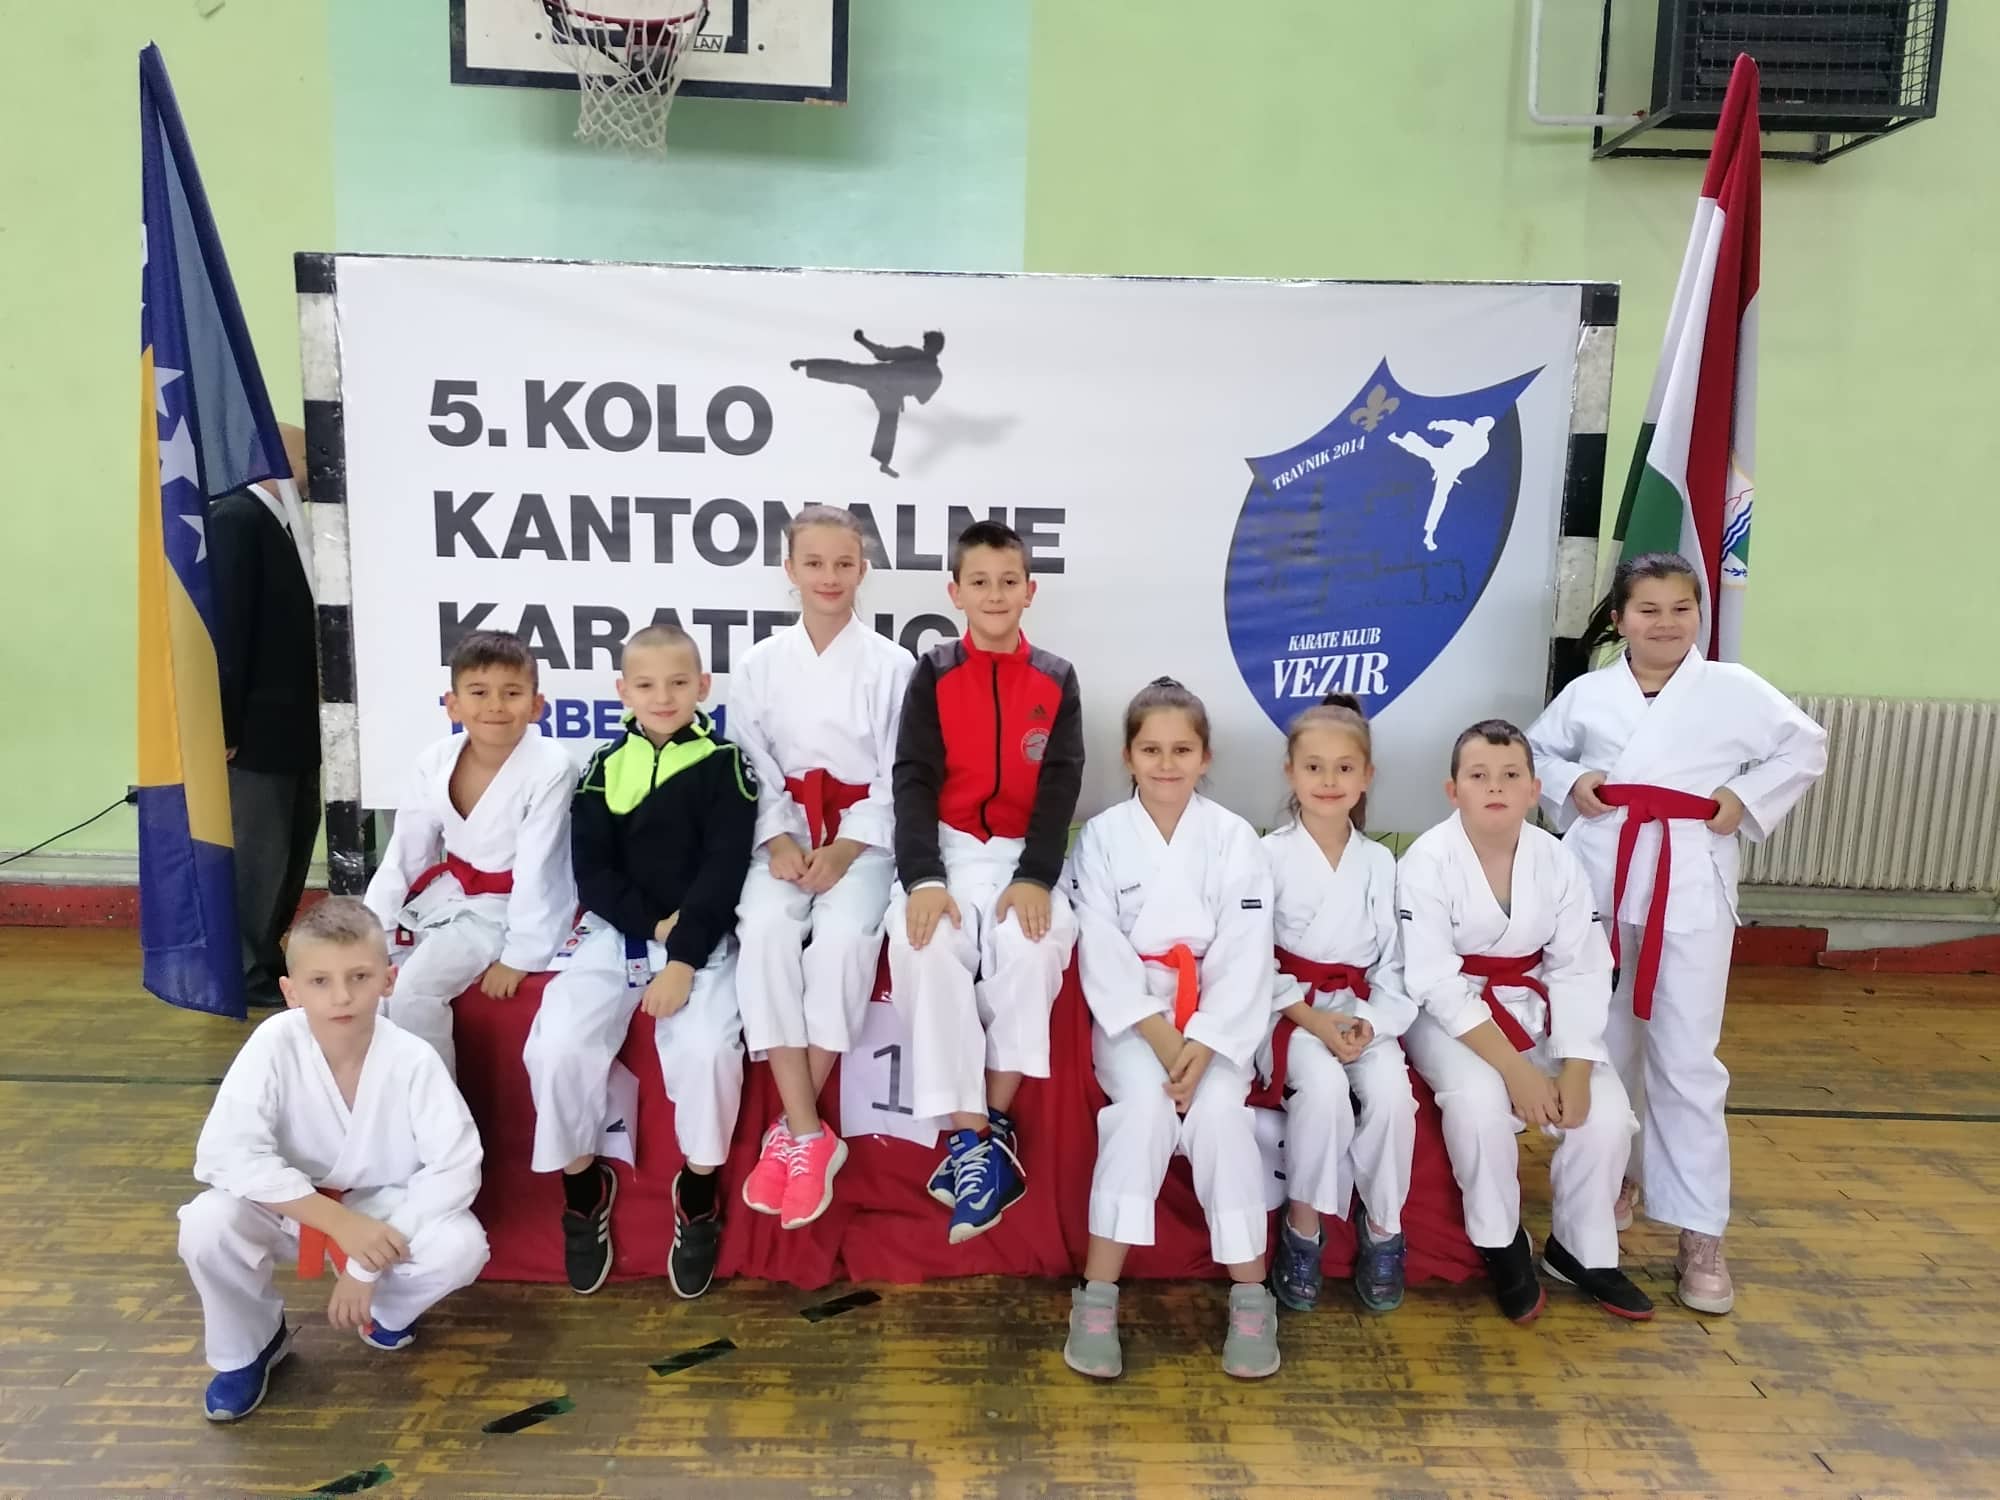 5.kolo kantonalne karate lige SBK/KSB, Turbe